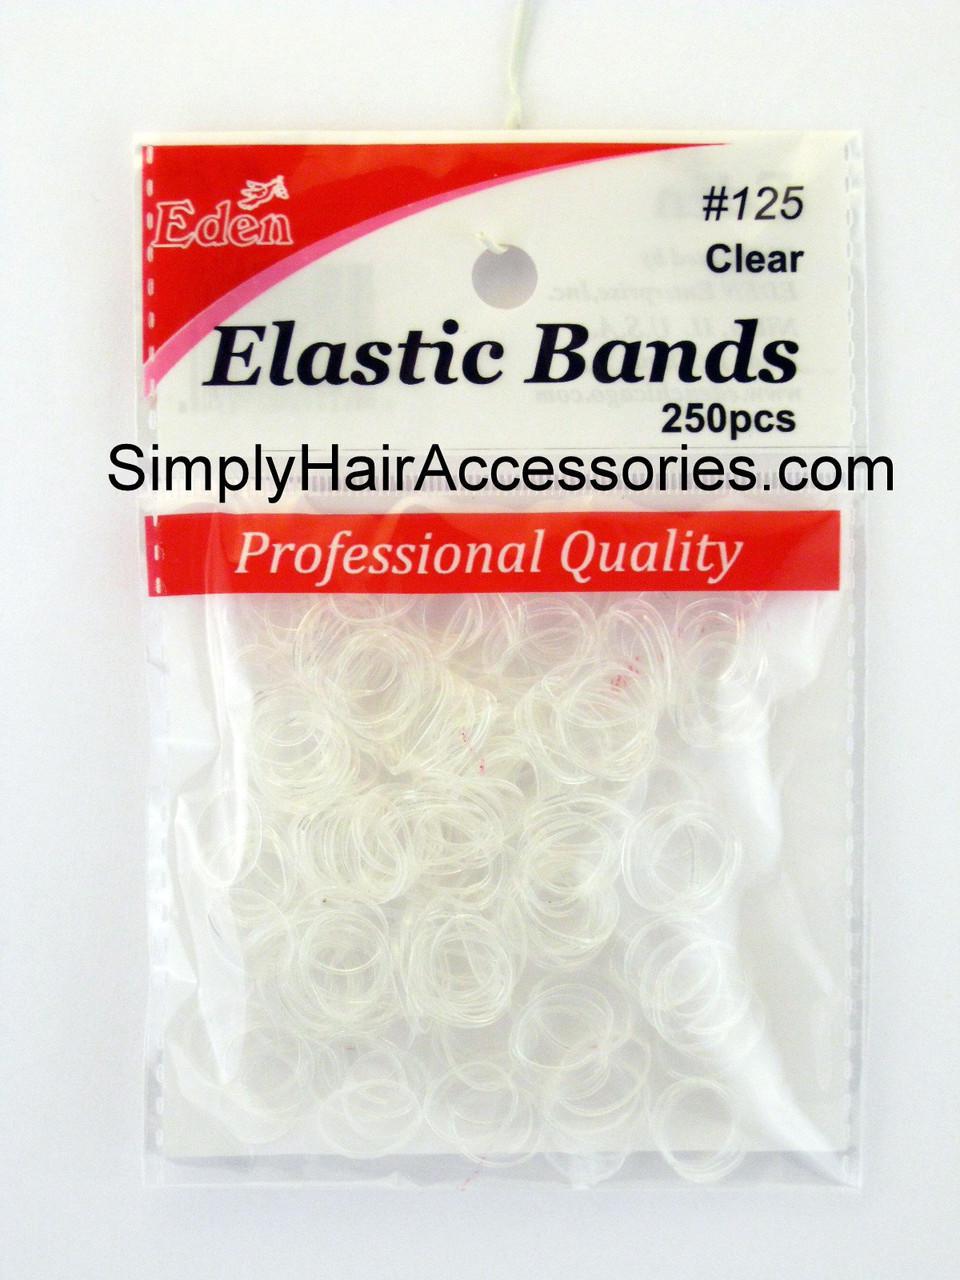 Eden Elastic Bands 250ct